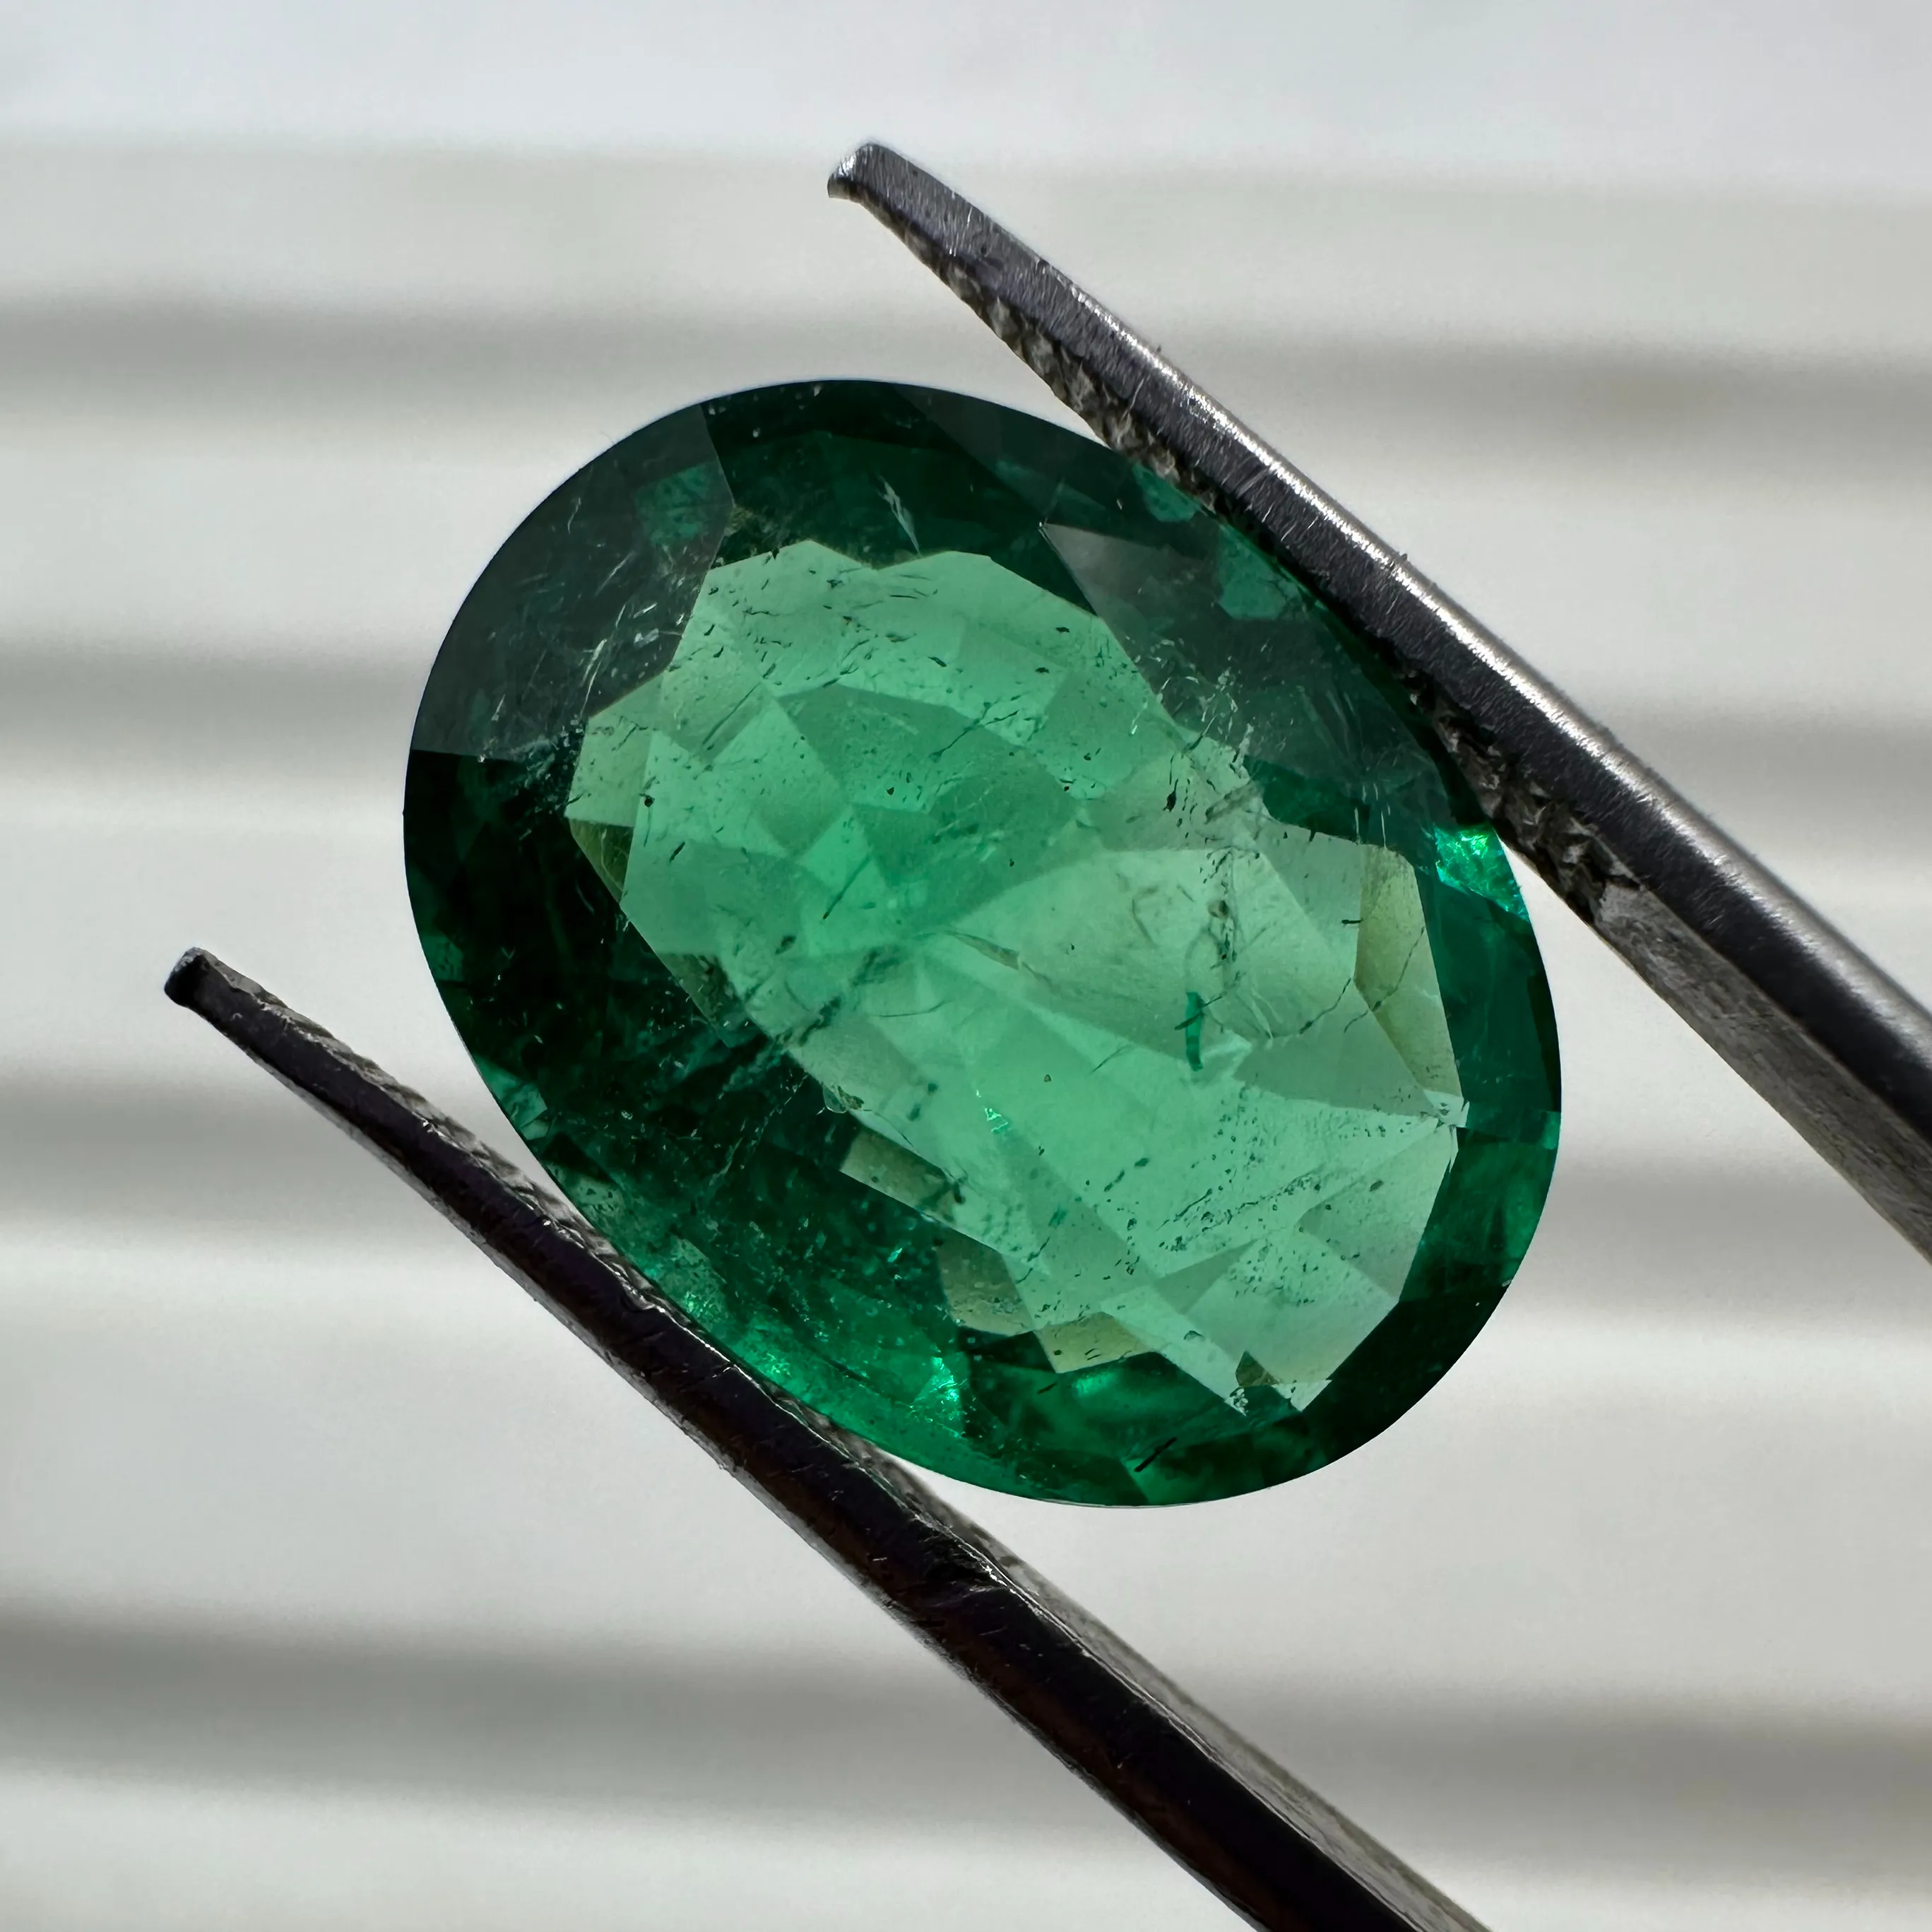 Alta calidad certificada 100% Natural Vivid Green Zambian Emerald Piedra preciosa suelta de 7 quilates de Loose Emerald Gemstone Lot